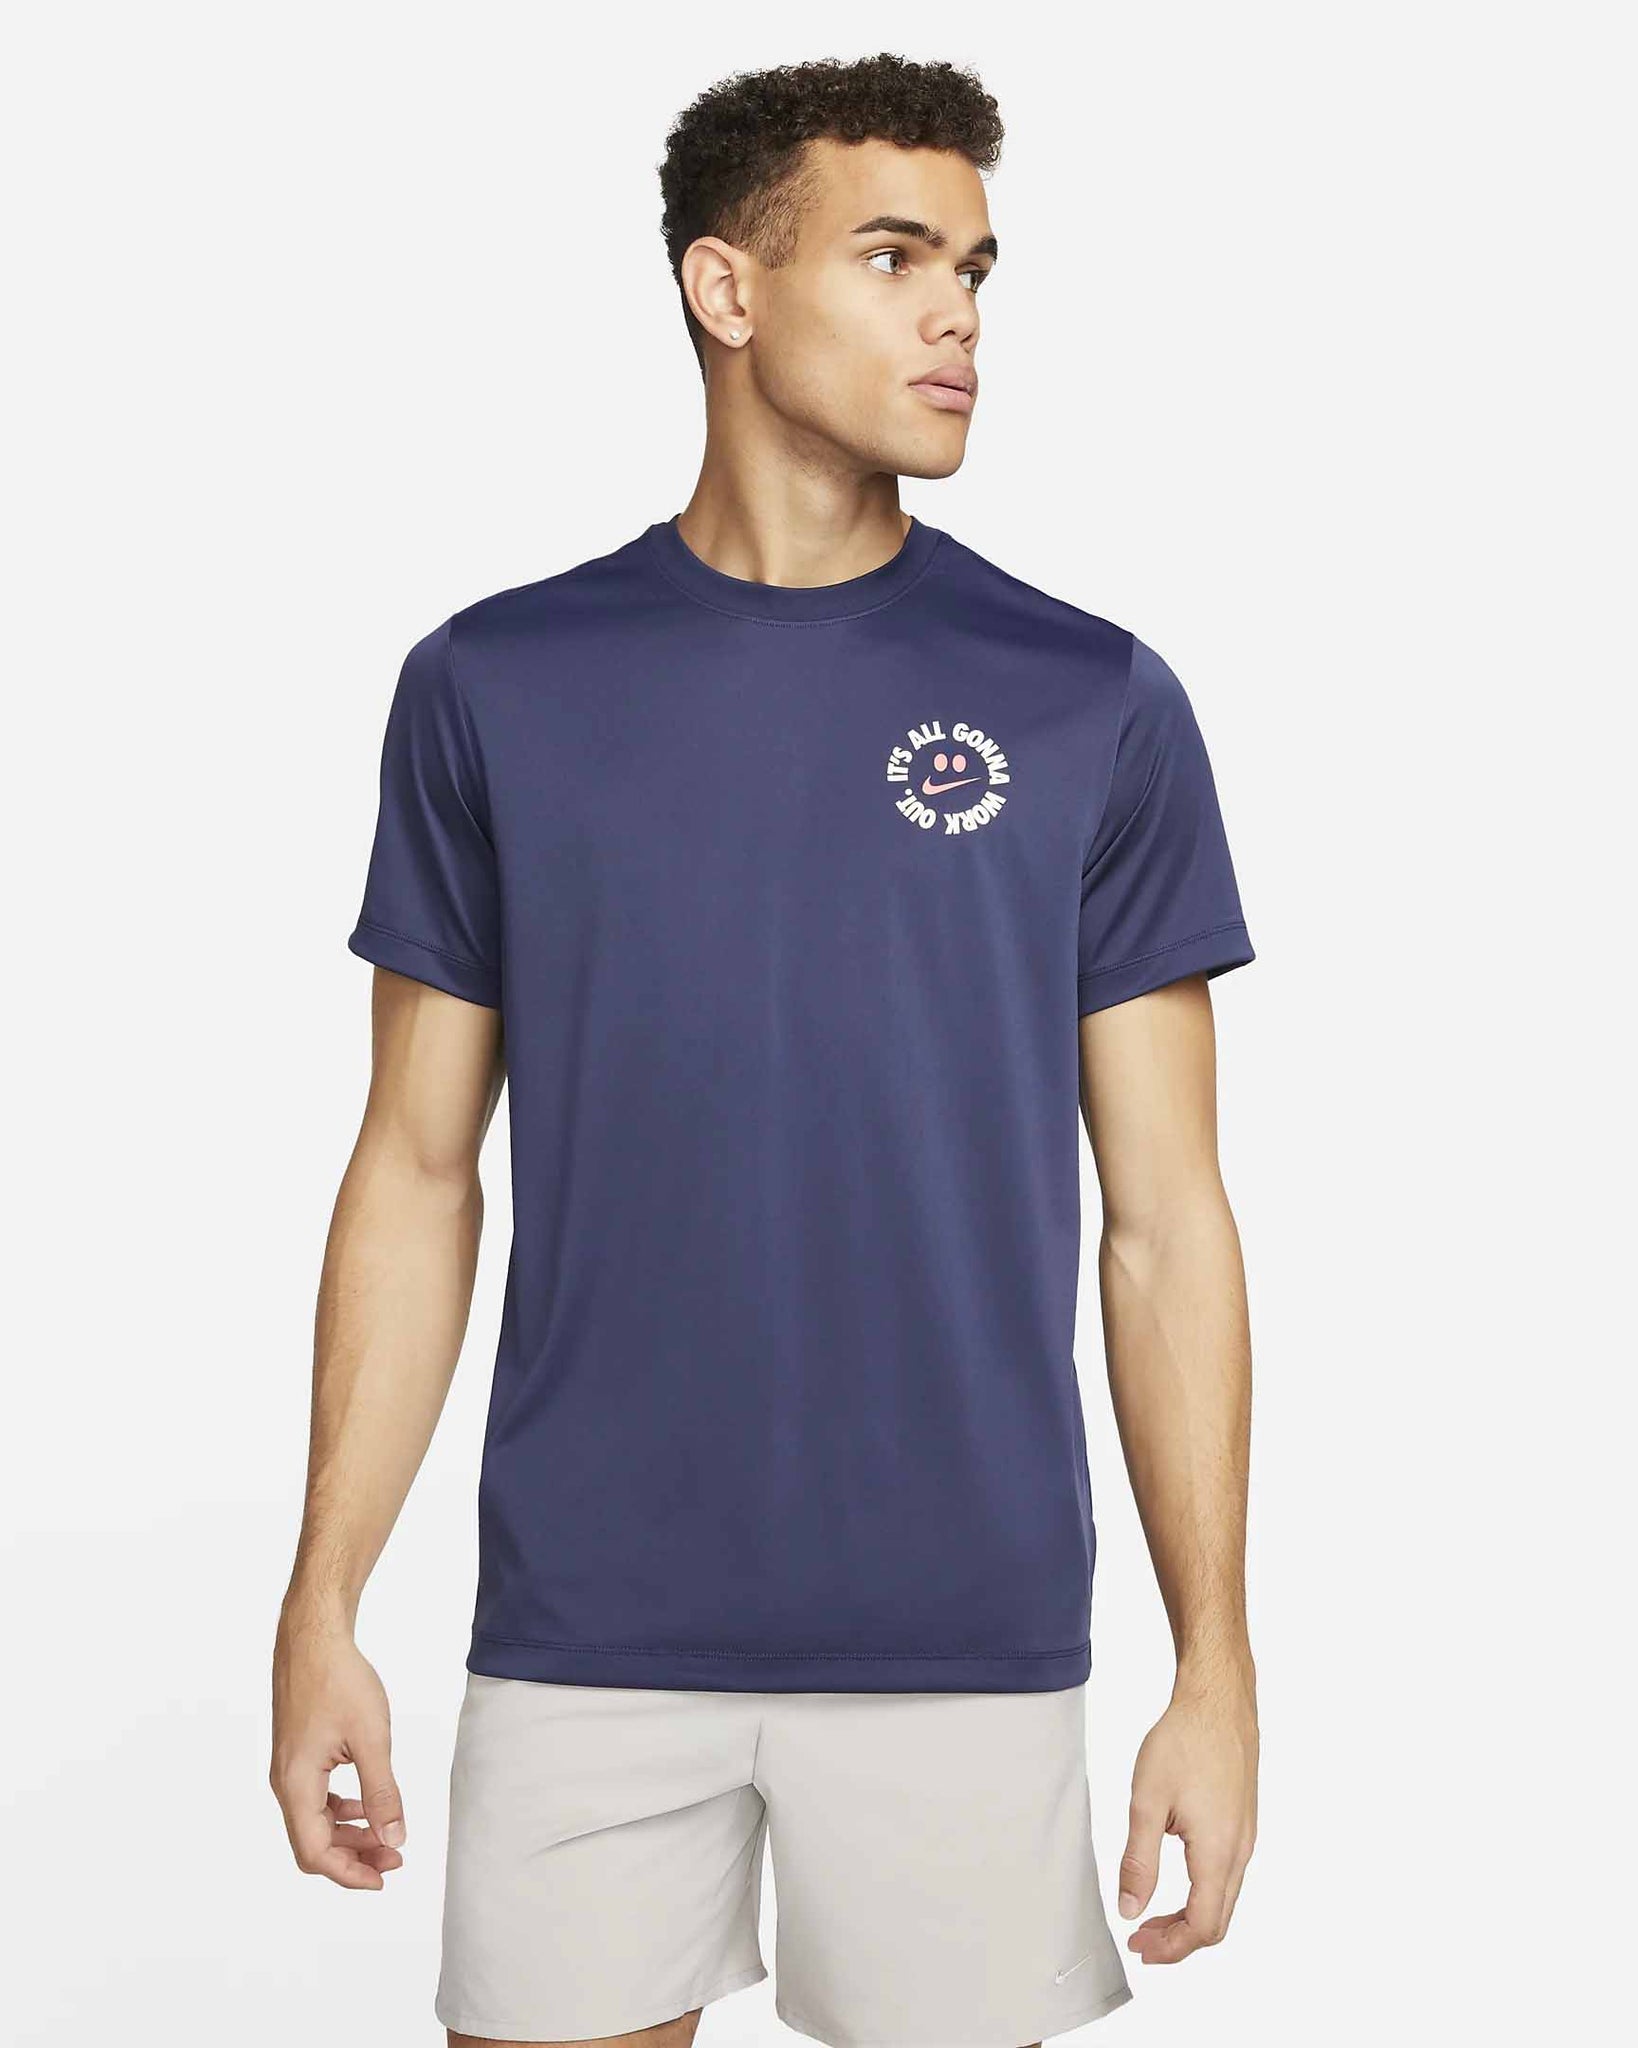 Nike - It's All - T-shirt d'entraînement DRI-Fit avec jupe